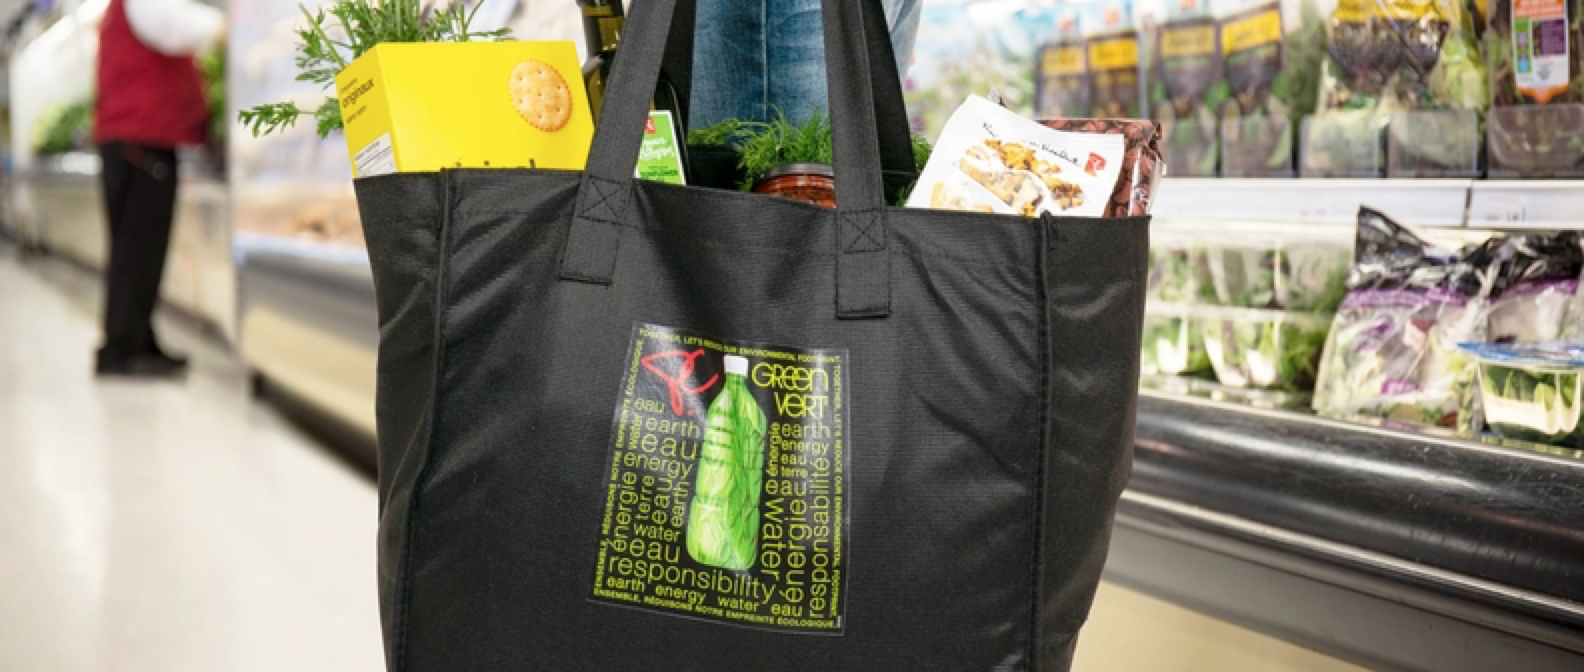 加拿大最大零售商Loblaw将彻底淘汰塑料袋-有解塑料观察